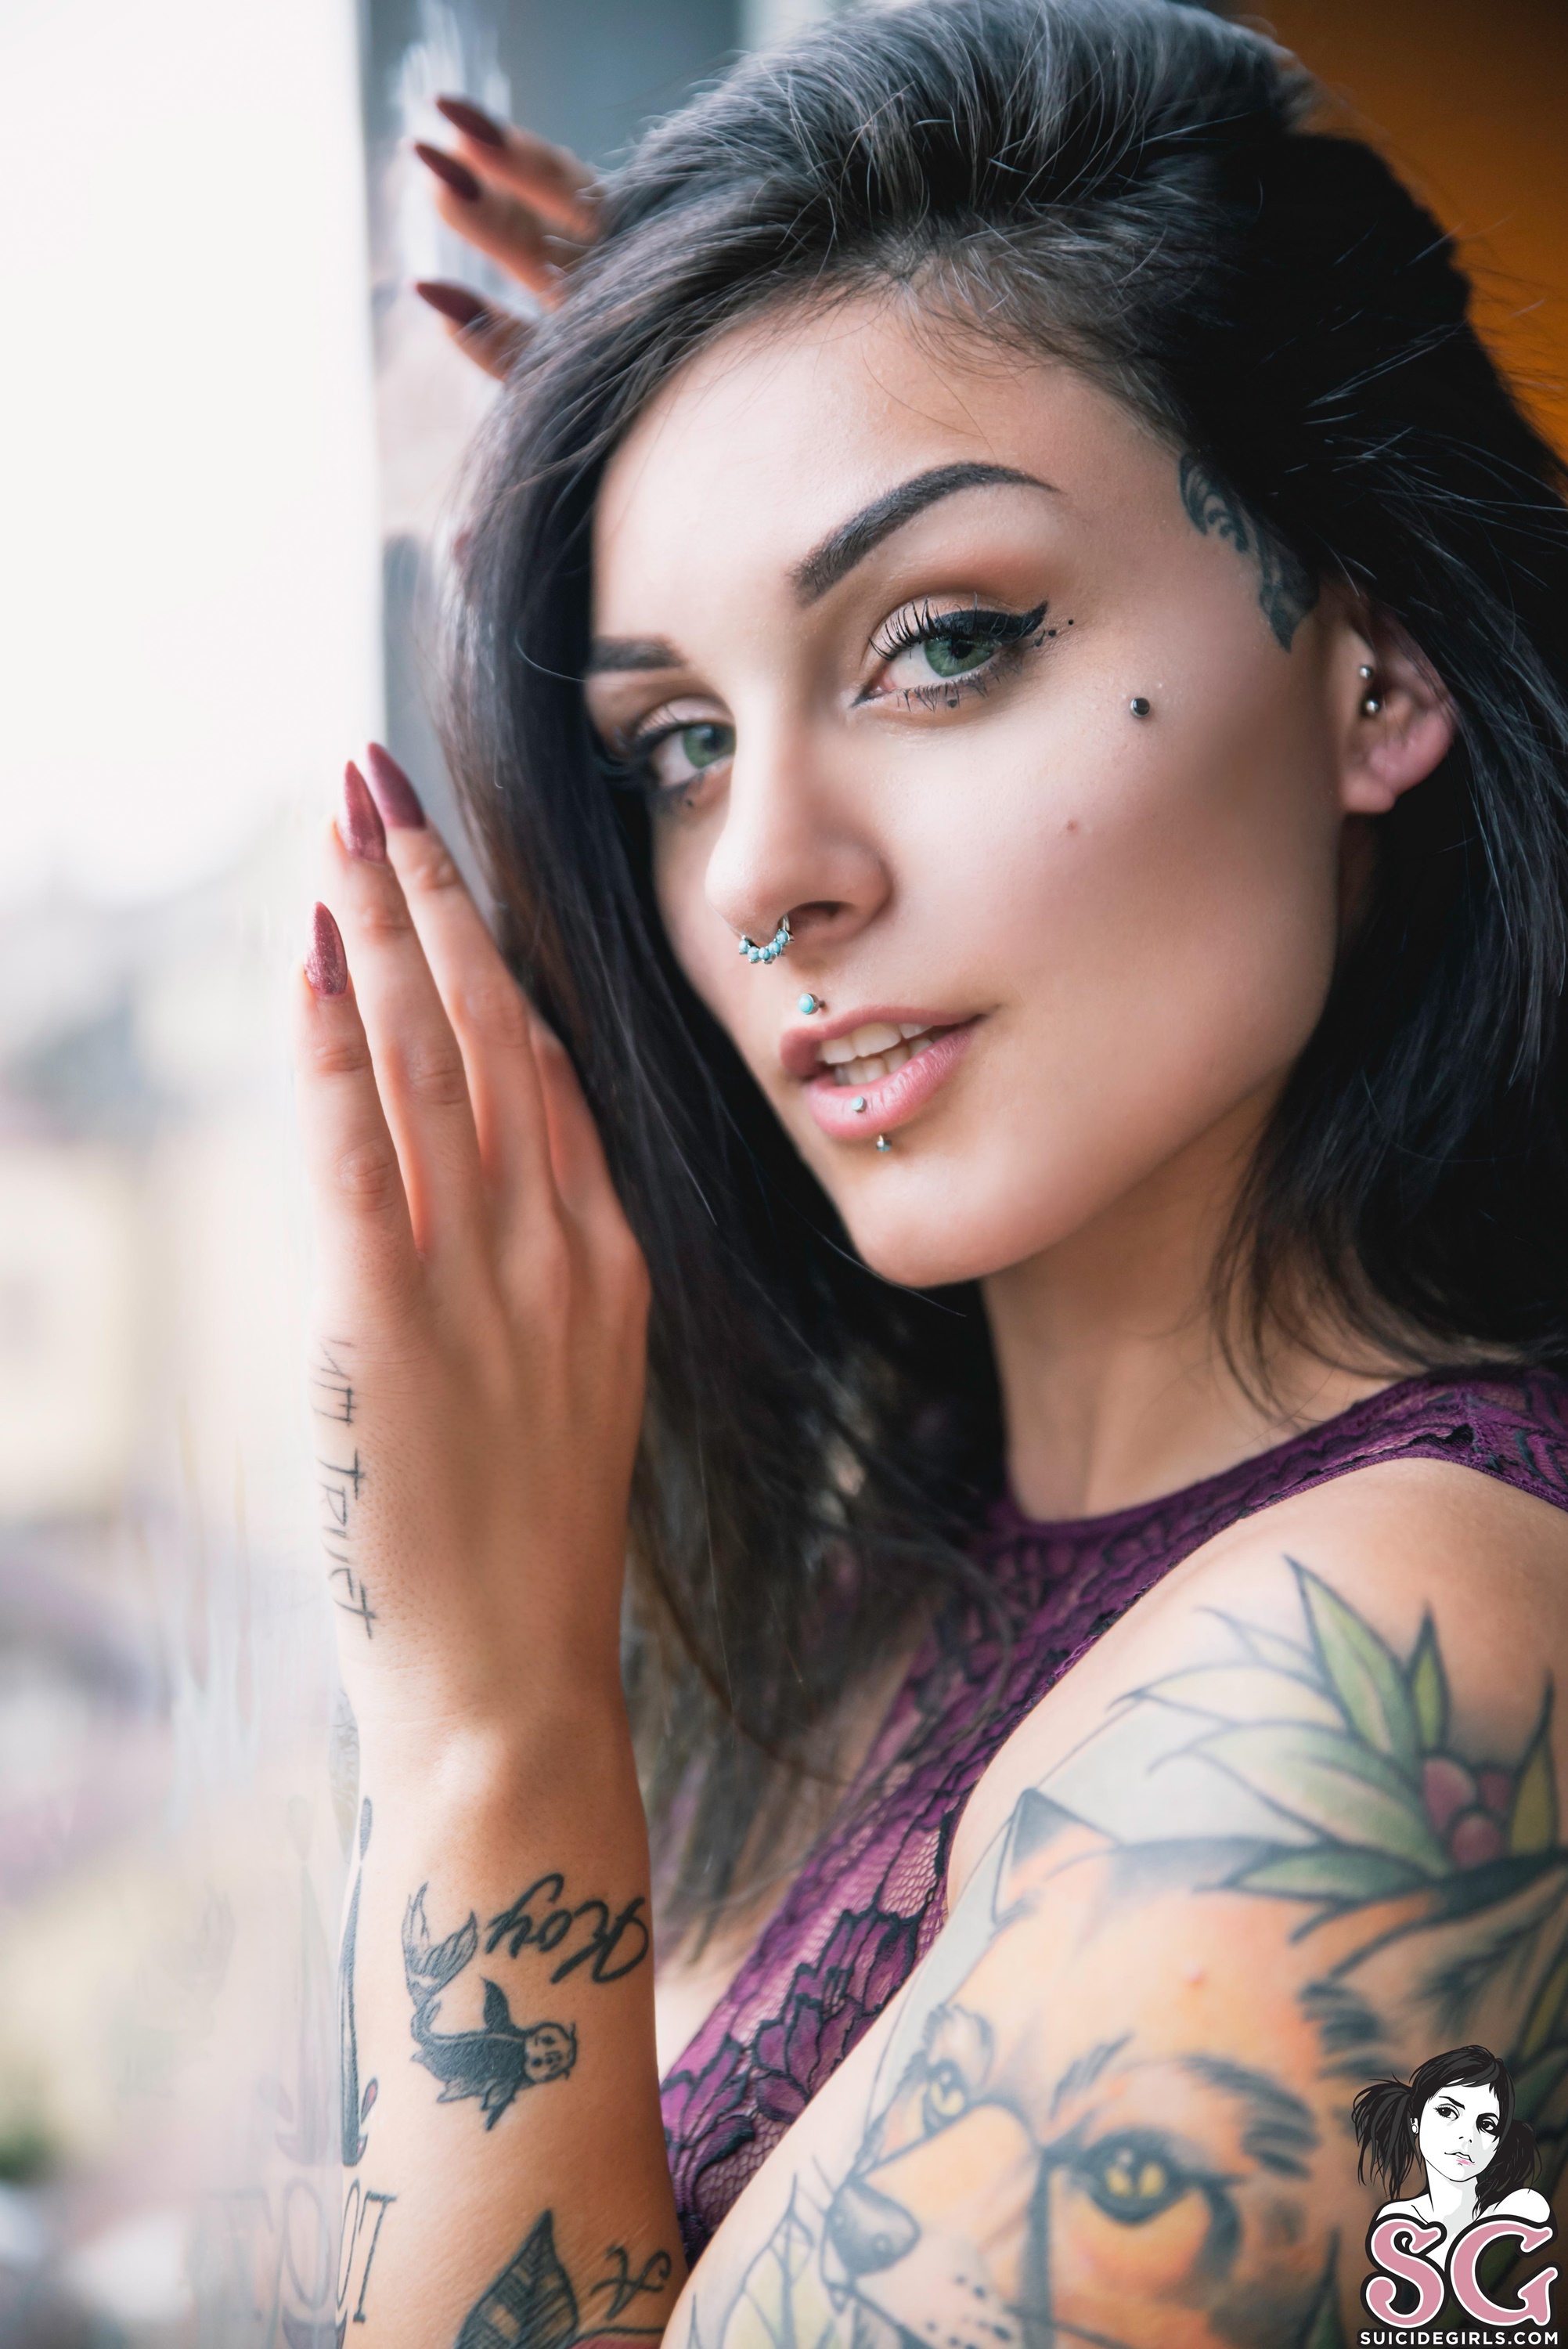 Women Model Inked Girls Brunette Tattoo Face Vertical Blue Eyes Eyeliner Pierced Nose Window Looking 2003x3000